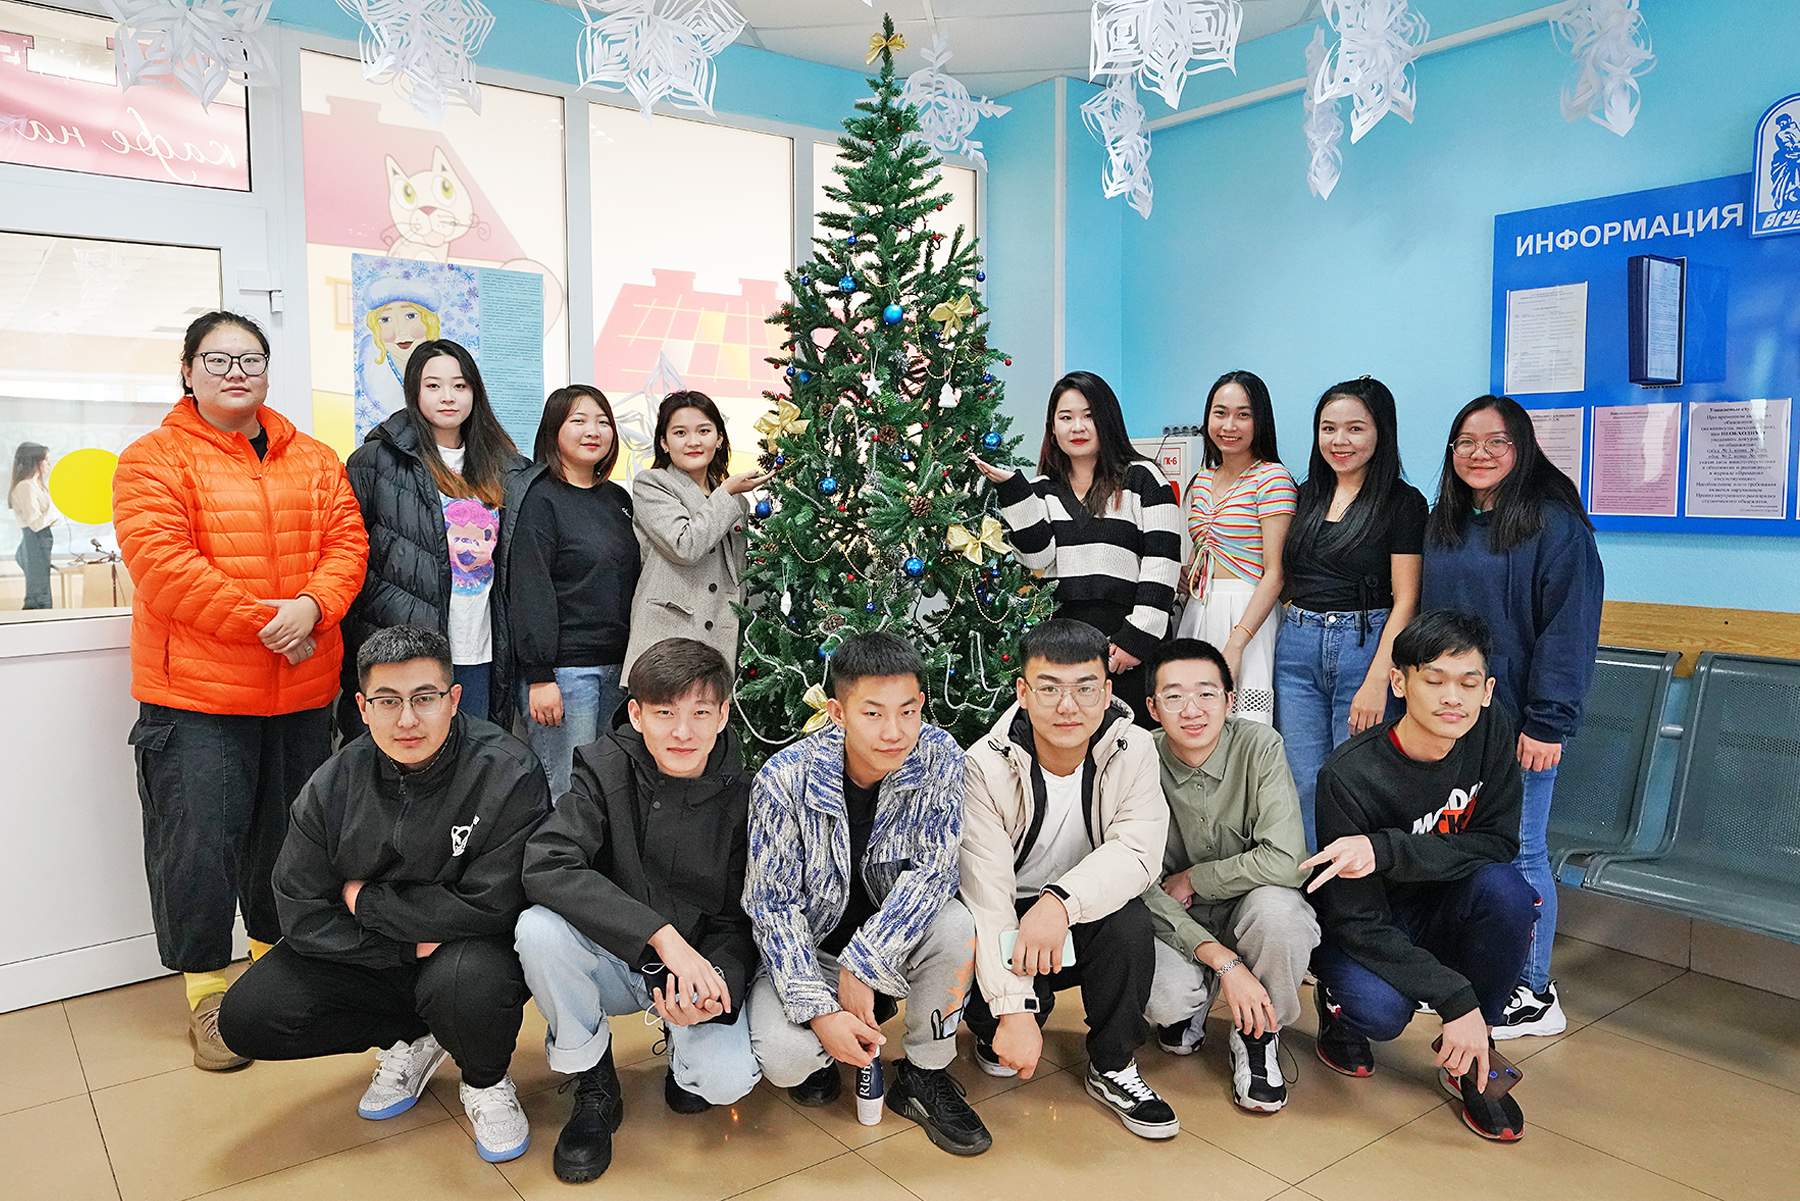 Иностранные студенты ВГУЭС отмечают Новый год по-русски